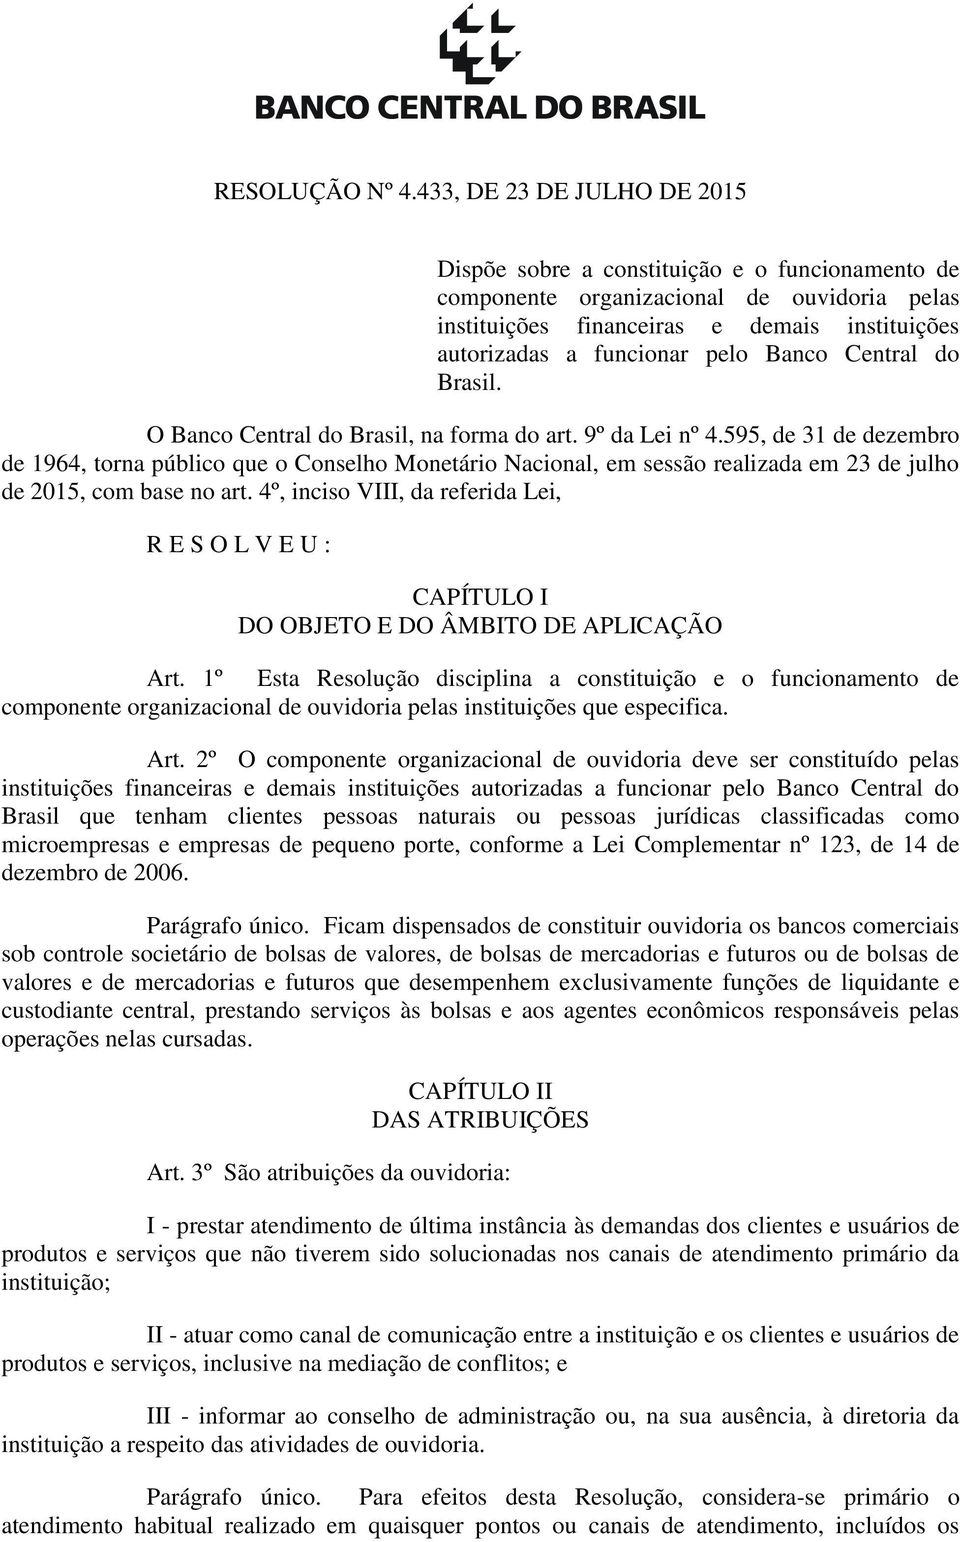 Banco Central do Brasil. O Banco Central do Brasil, na forma do art. 9º da Lei nº 4.